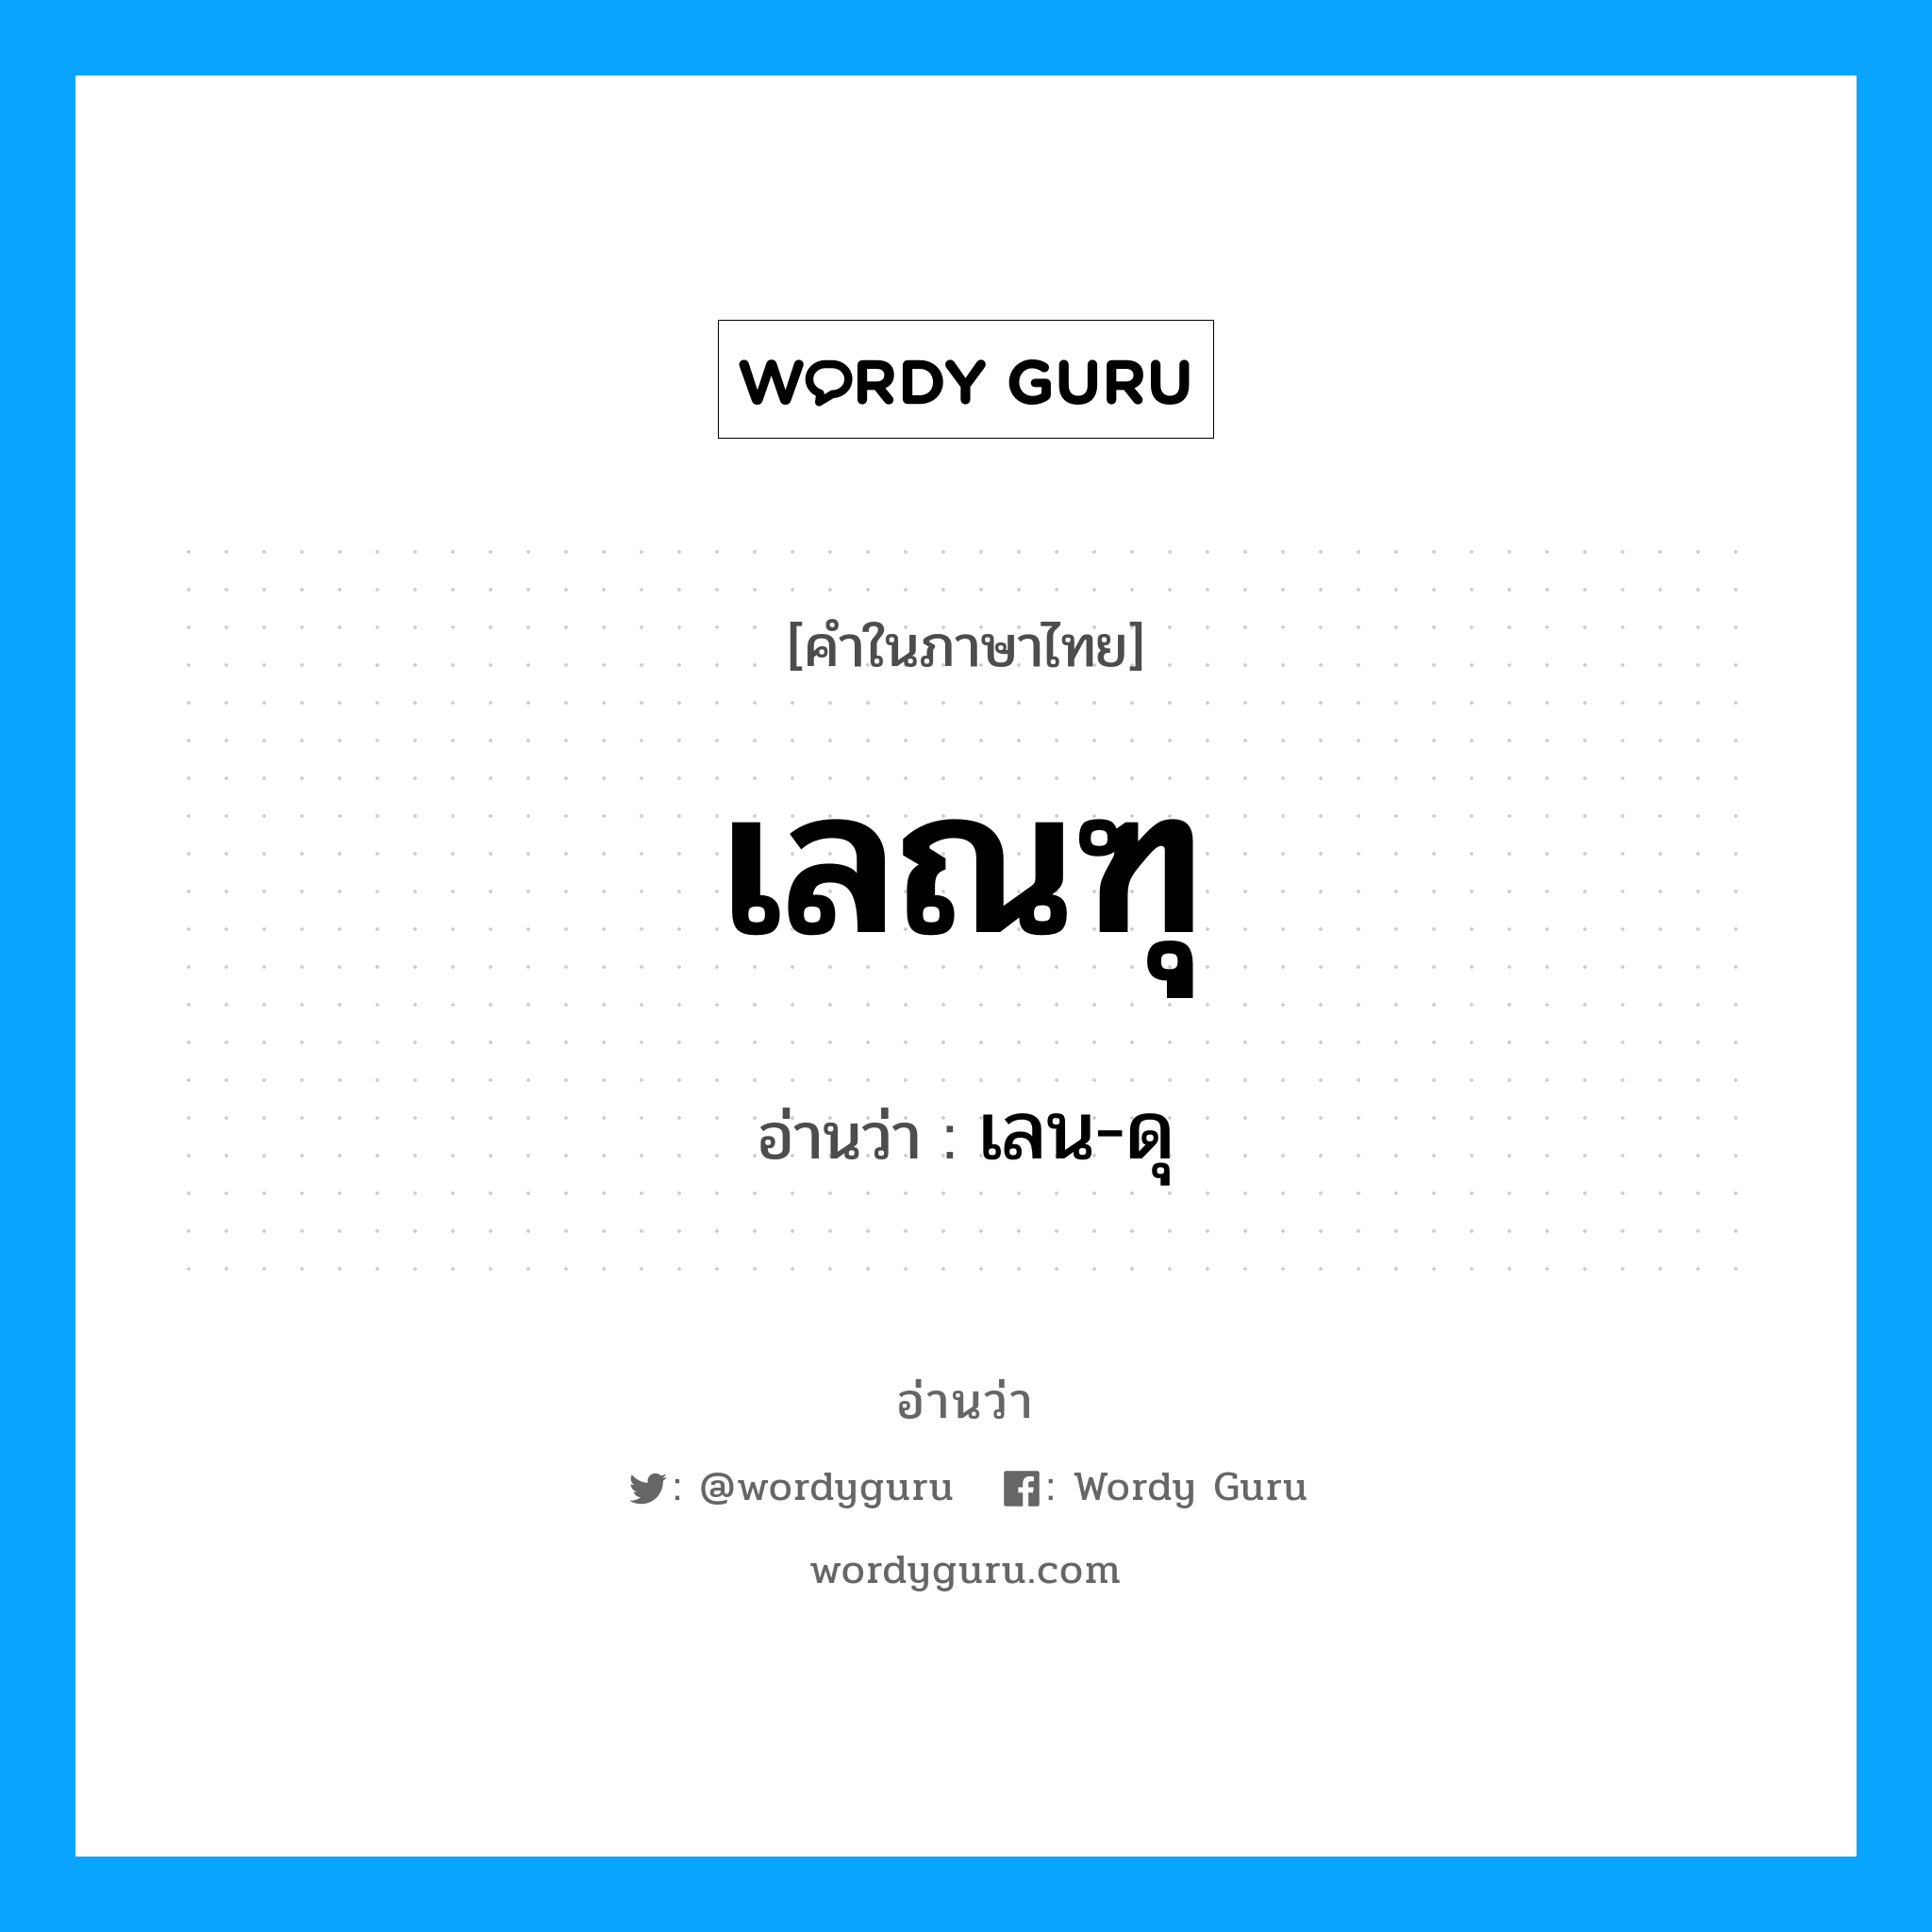 เลน-ดุ เป็นคำอ่านของคำไหน?, คำในภาษาไทย เลน-ดุ อ่านว่า เลณฑุ